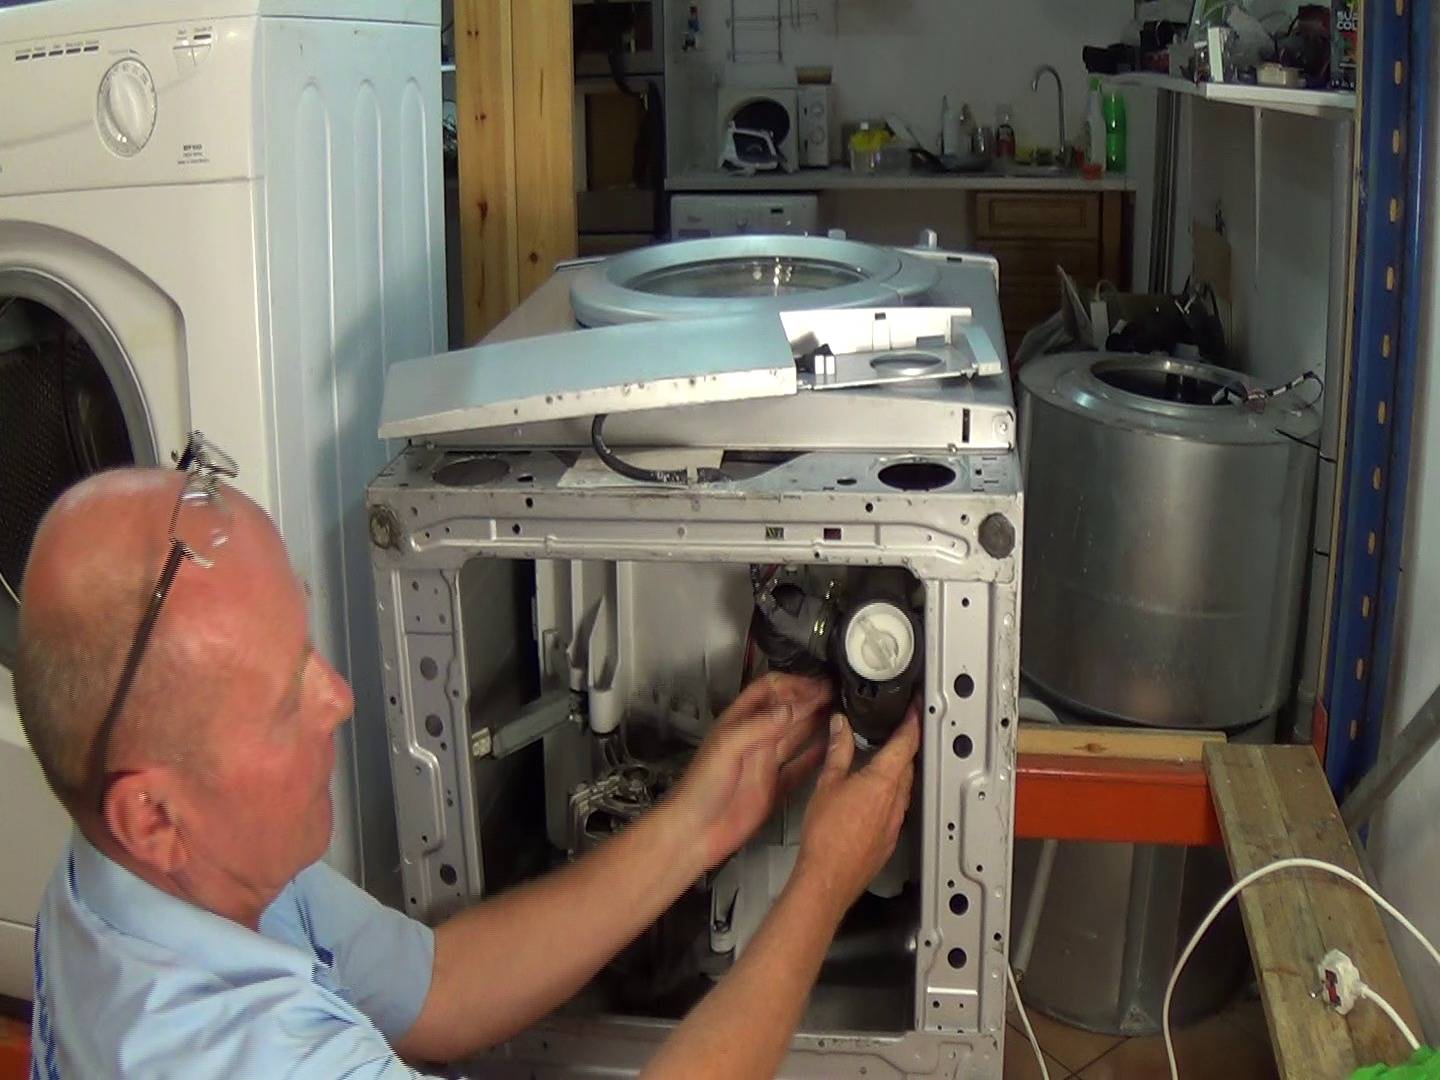 Замена сливного шланга в стиральной машине